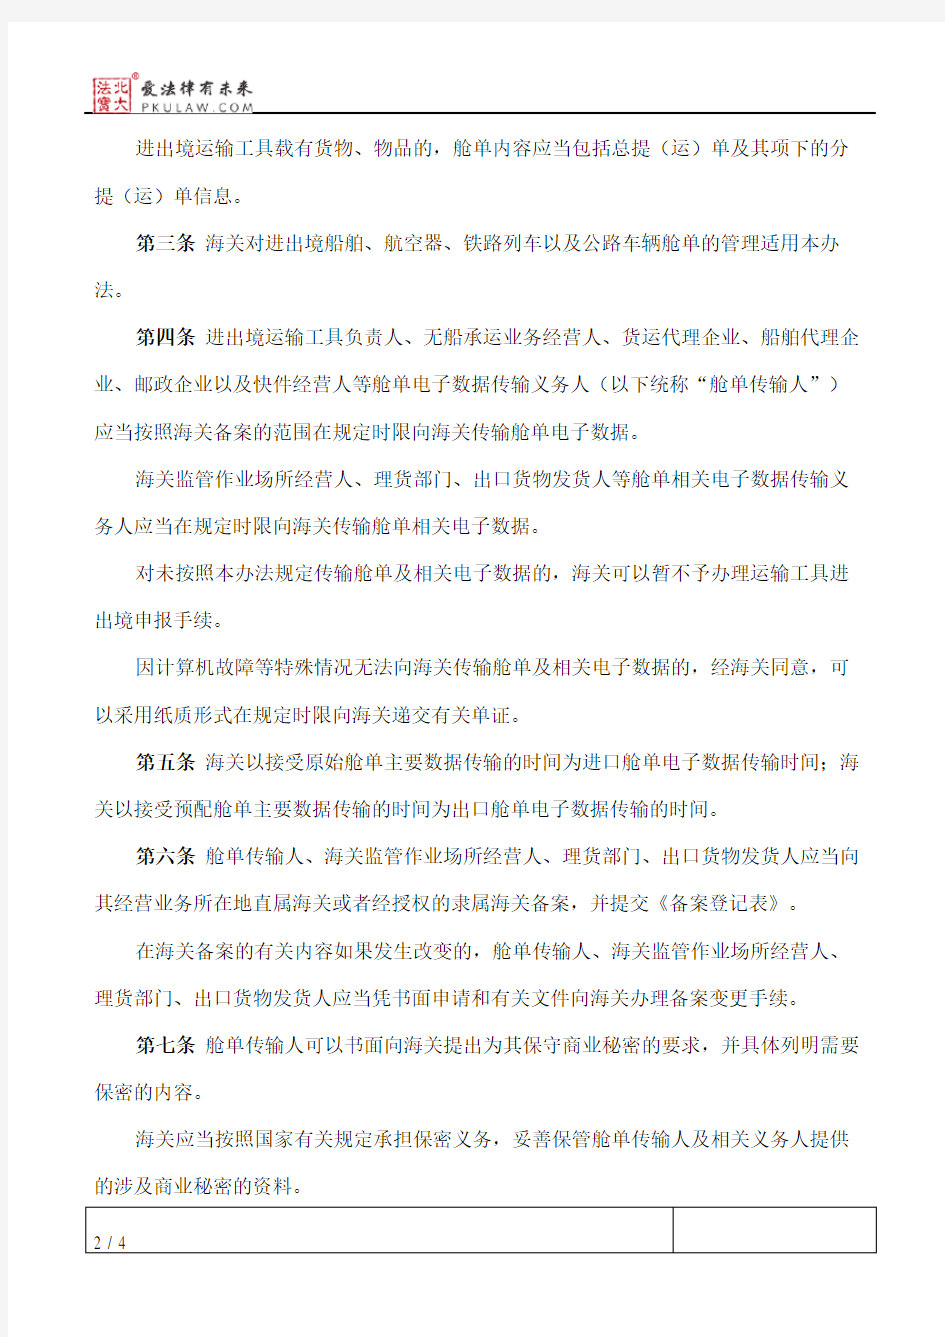 中华人民共和国海关进出境运输工具舱单管理办法(2018修正)